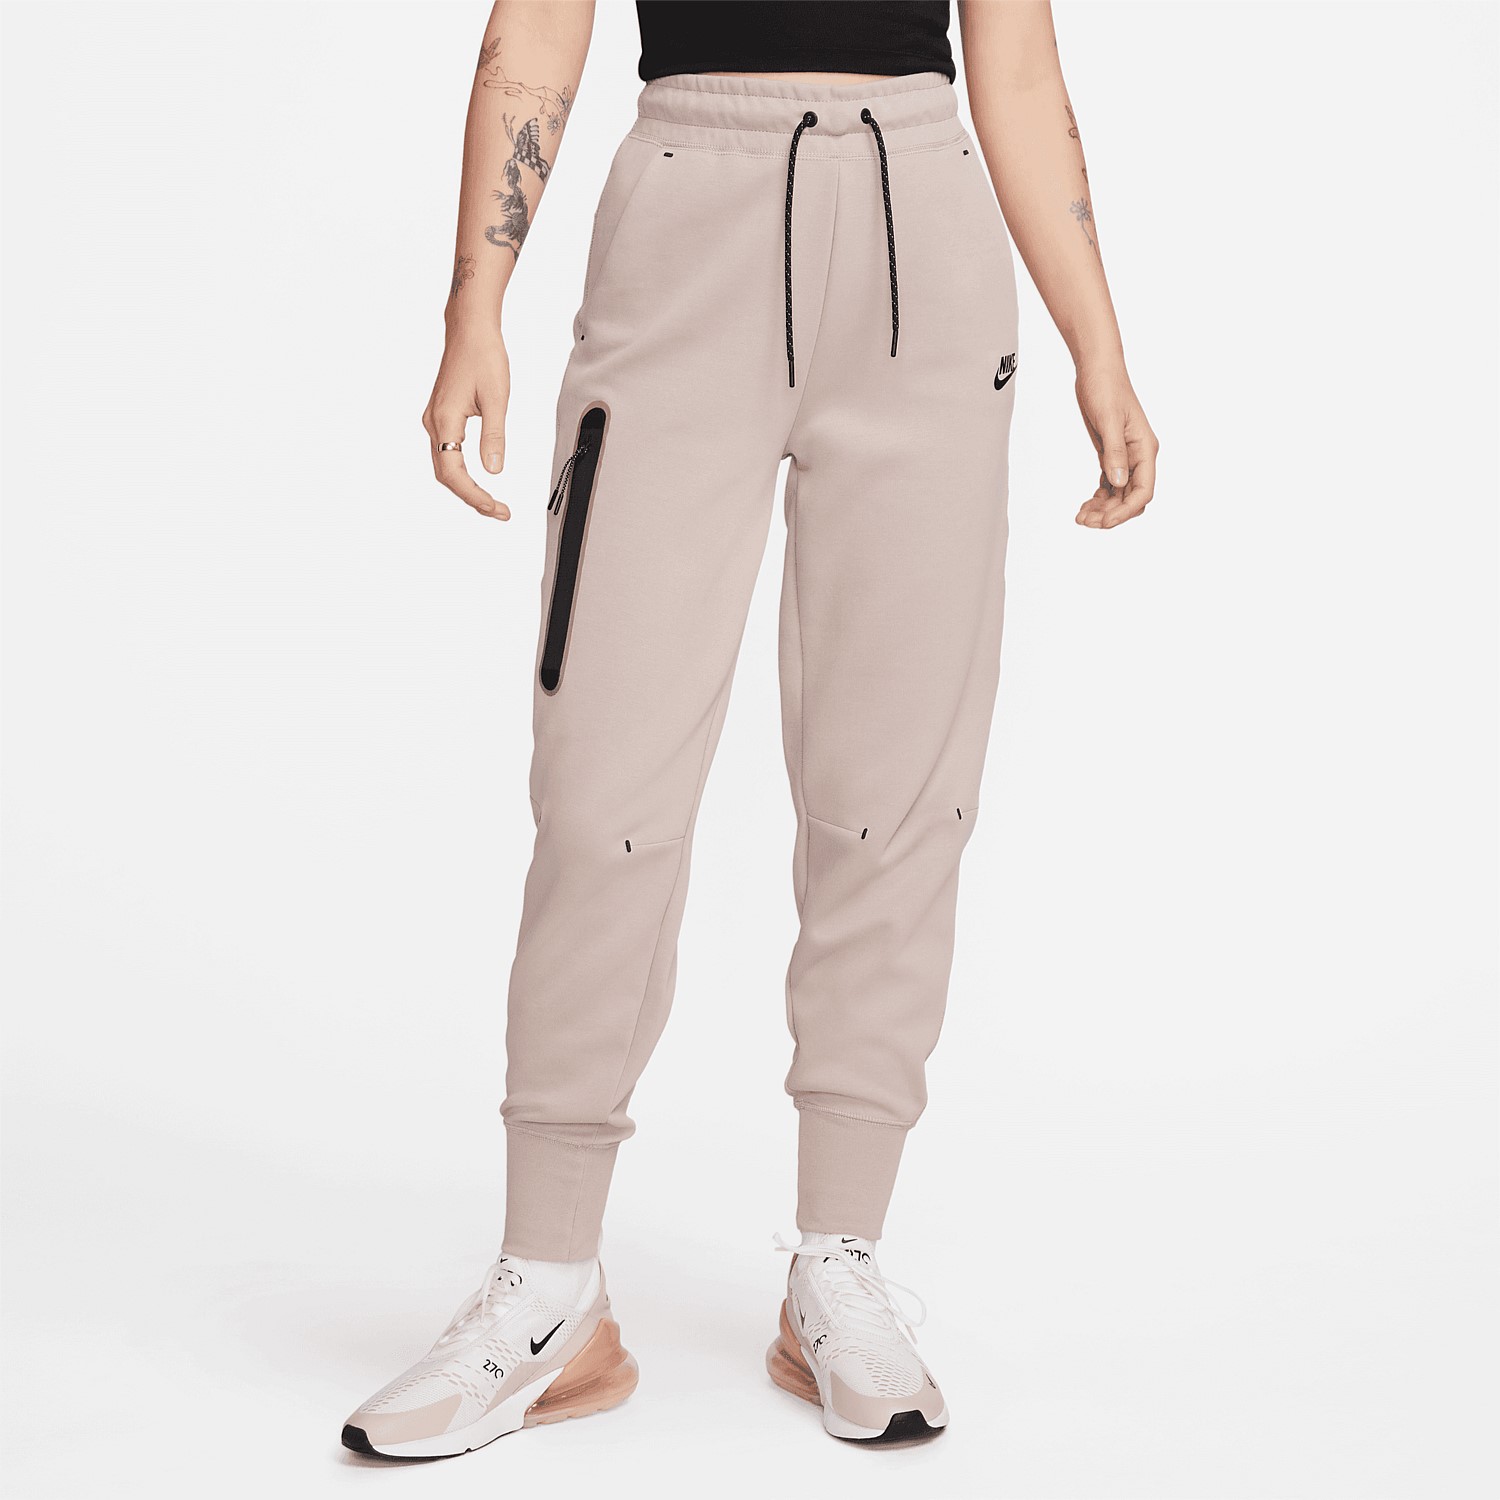 Nike Sportswear Tech Fleece Women's Pants | Pants & Sweats | Stirling ...